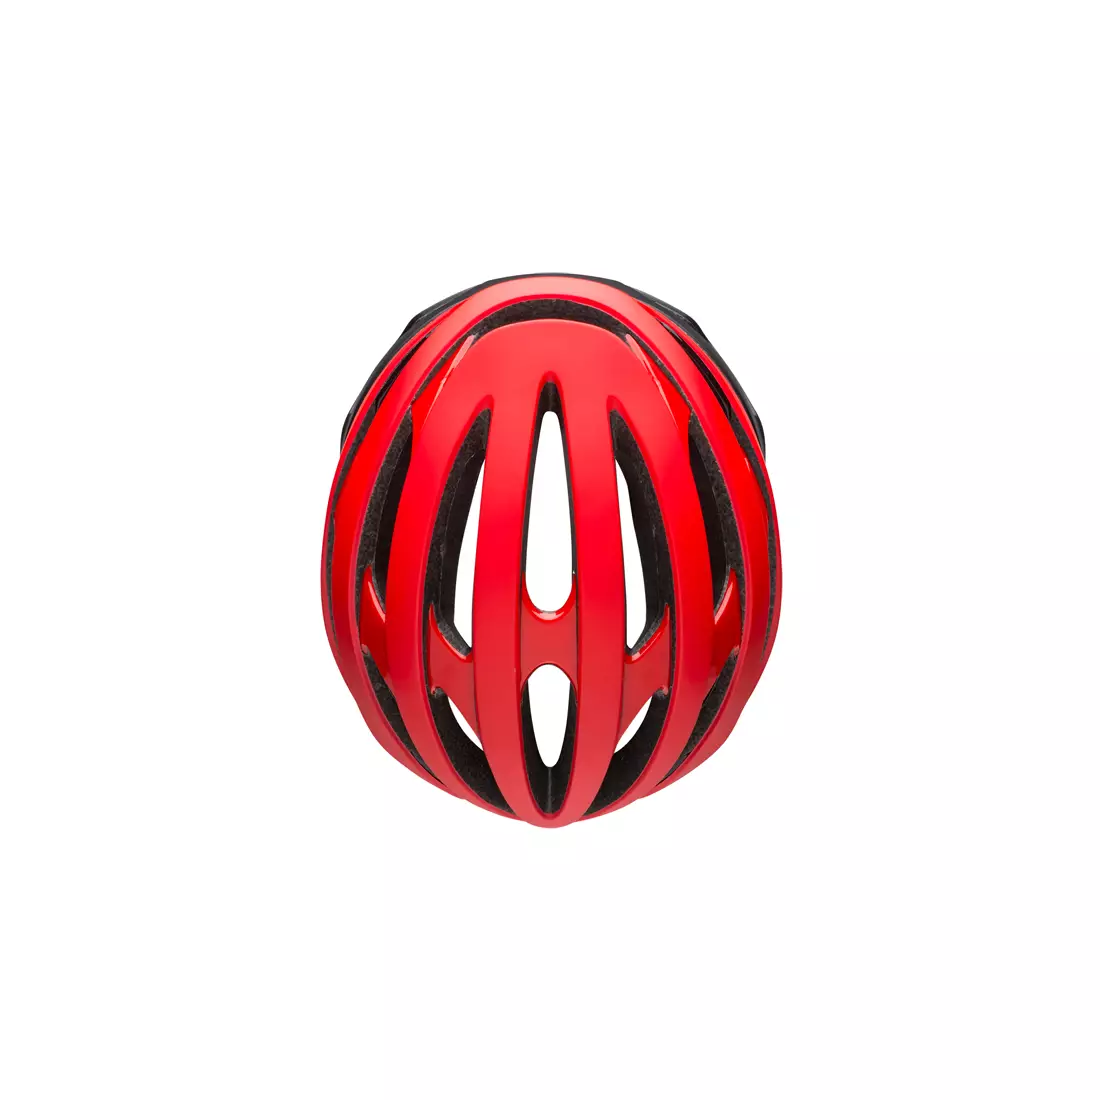 BELL STRATUS MIPS BEL-7087698 bicycle helmet matte red black